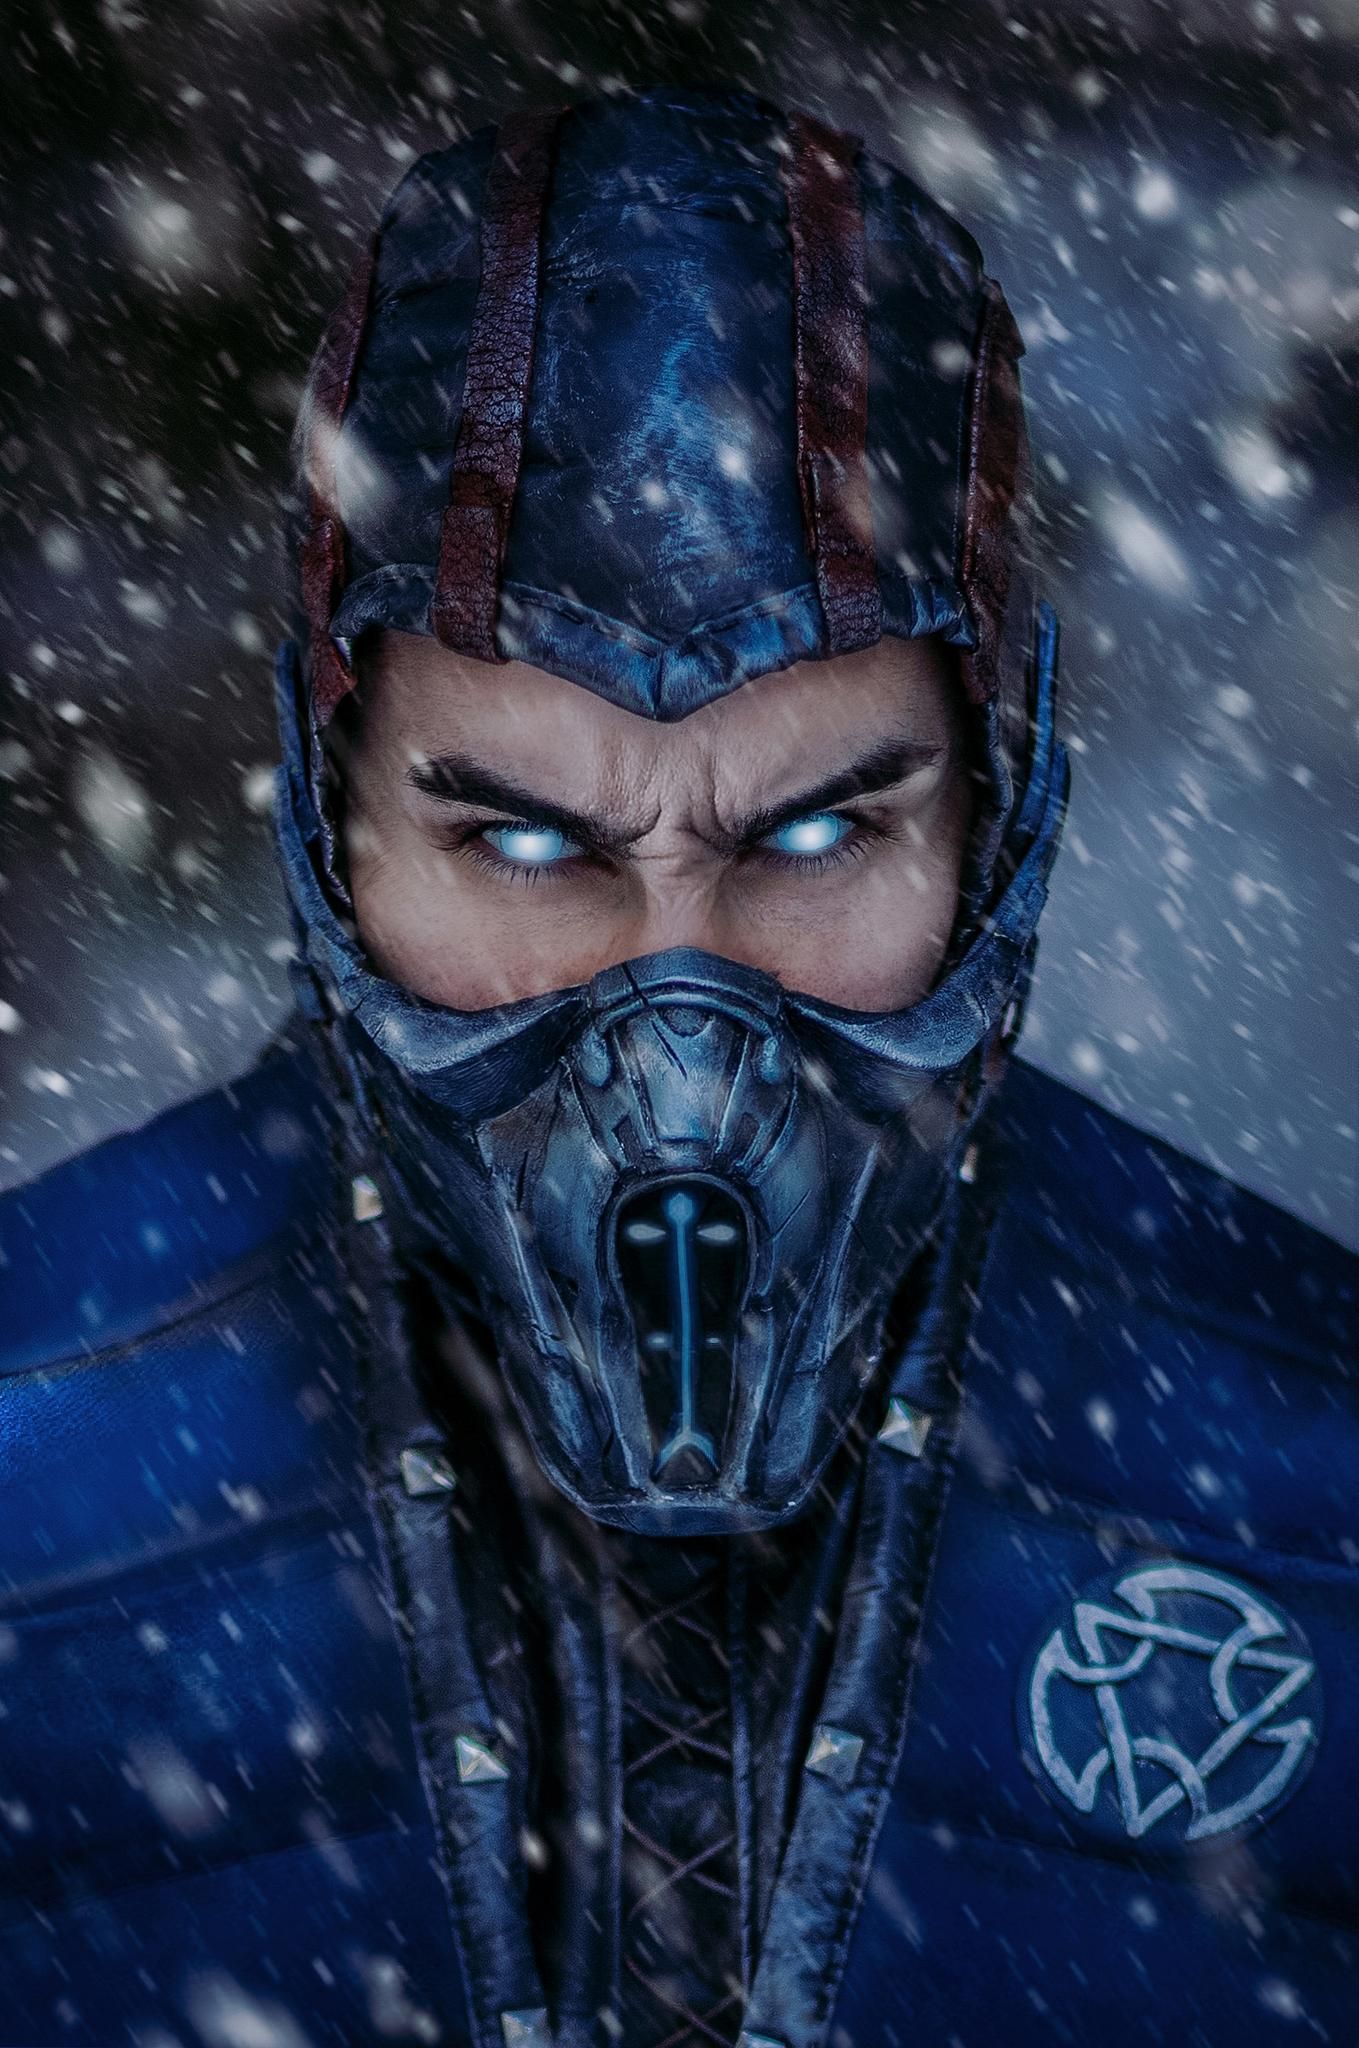 SELF Sub Zero #cosplay /1Pirklu. Mortal Kombat Art, Comic Art Fans, Sub Zero Mortal Kombat